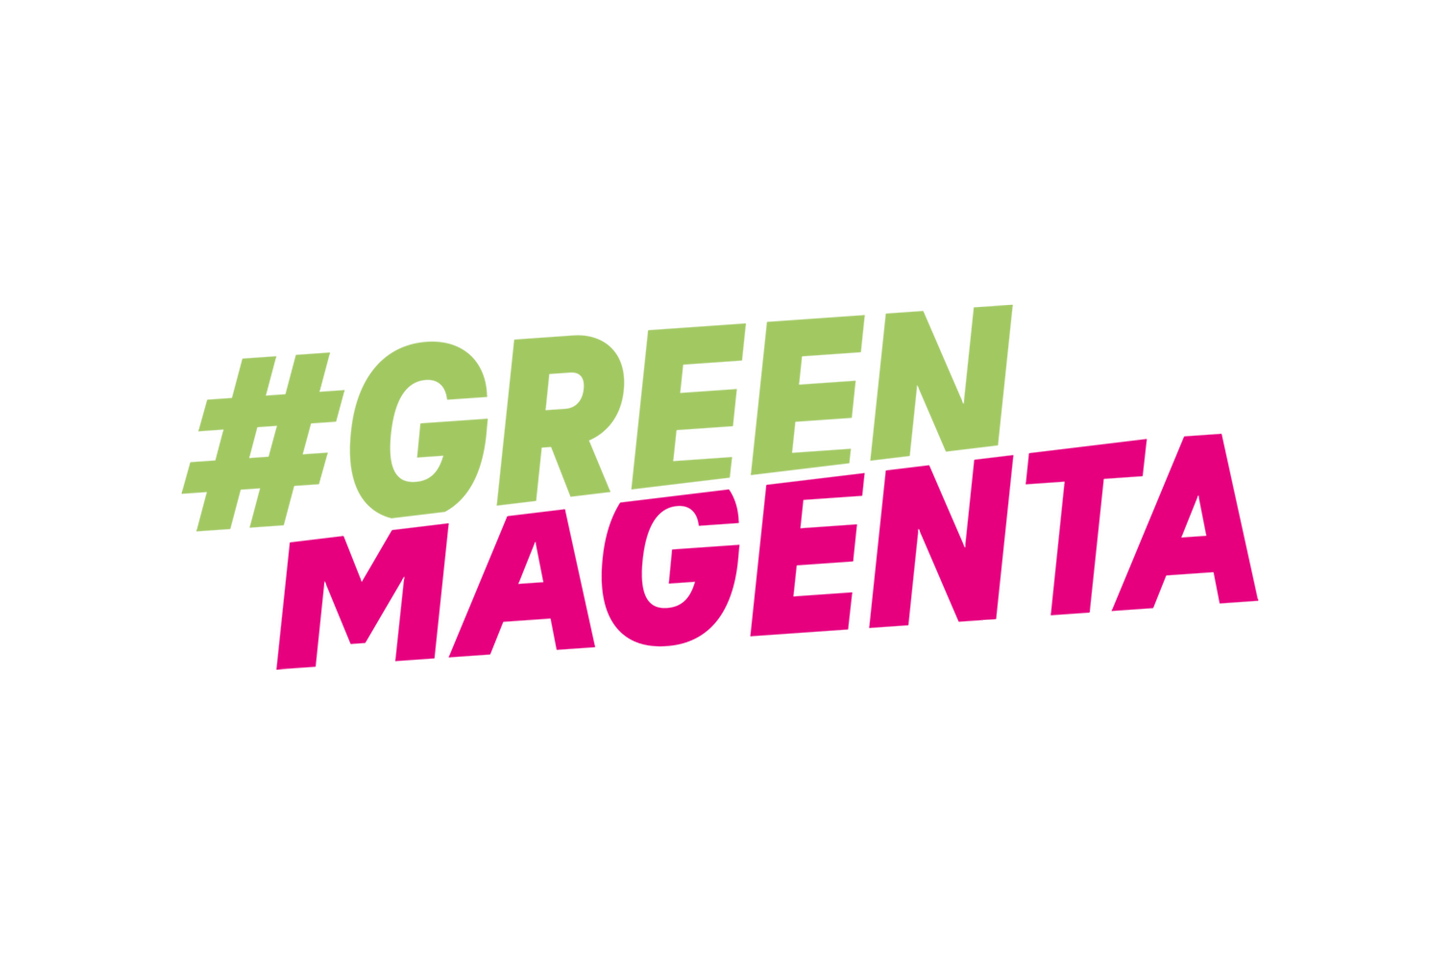 Het logo #Green Magenta op een groene achtergrond.